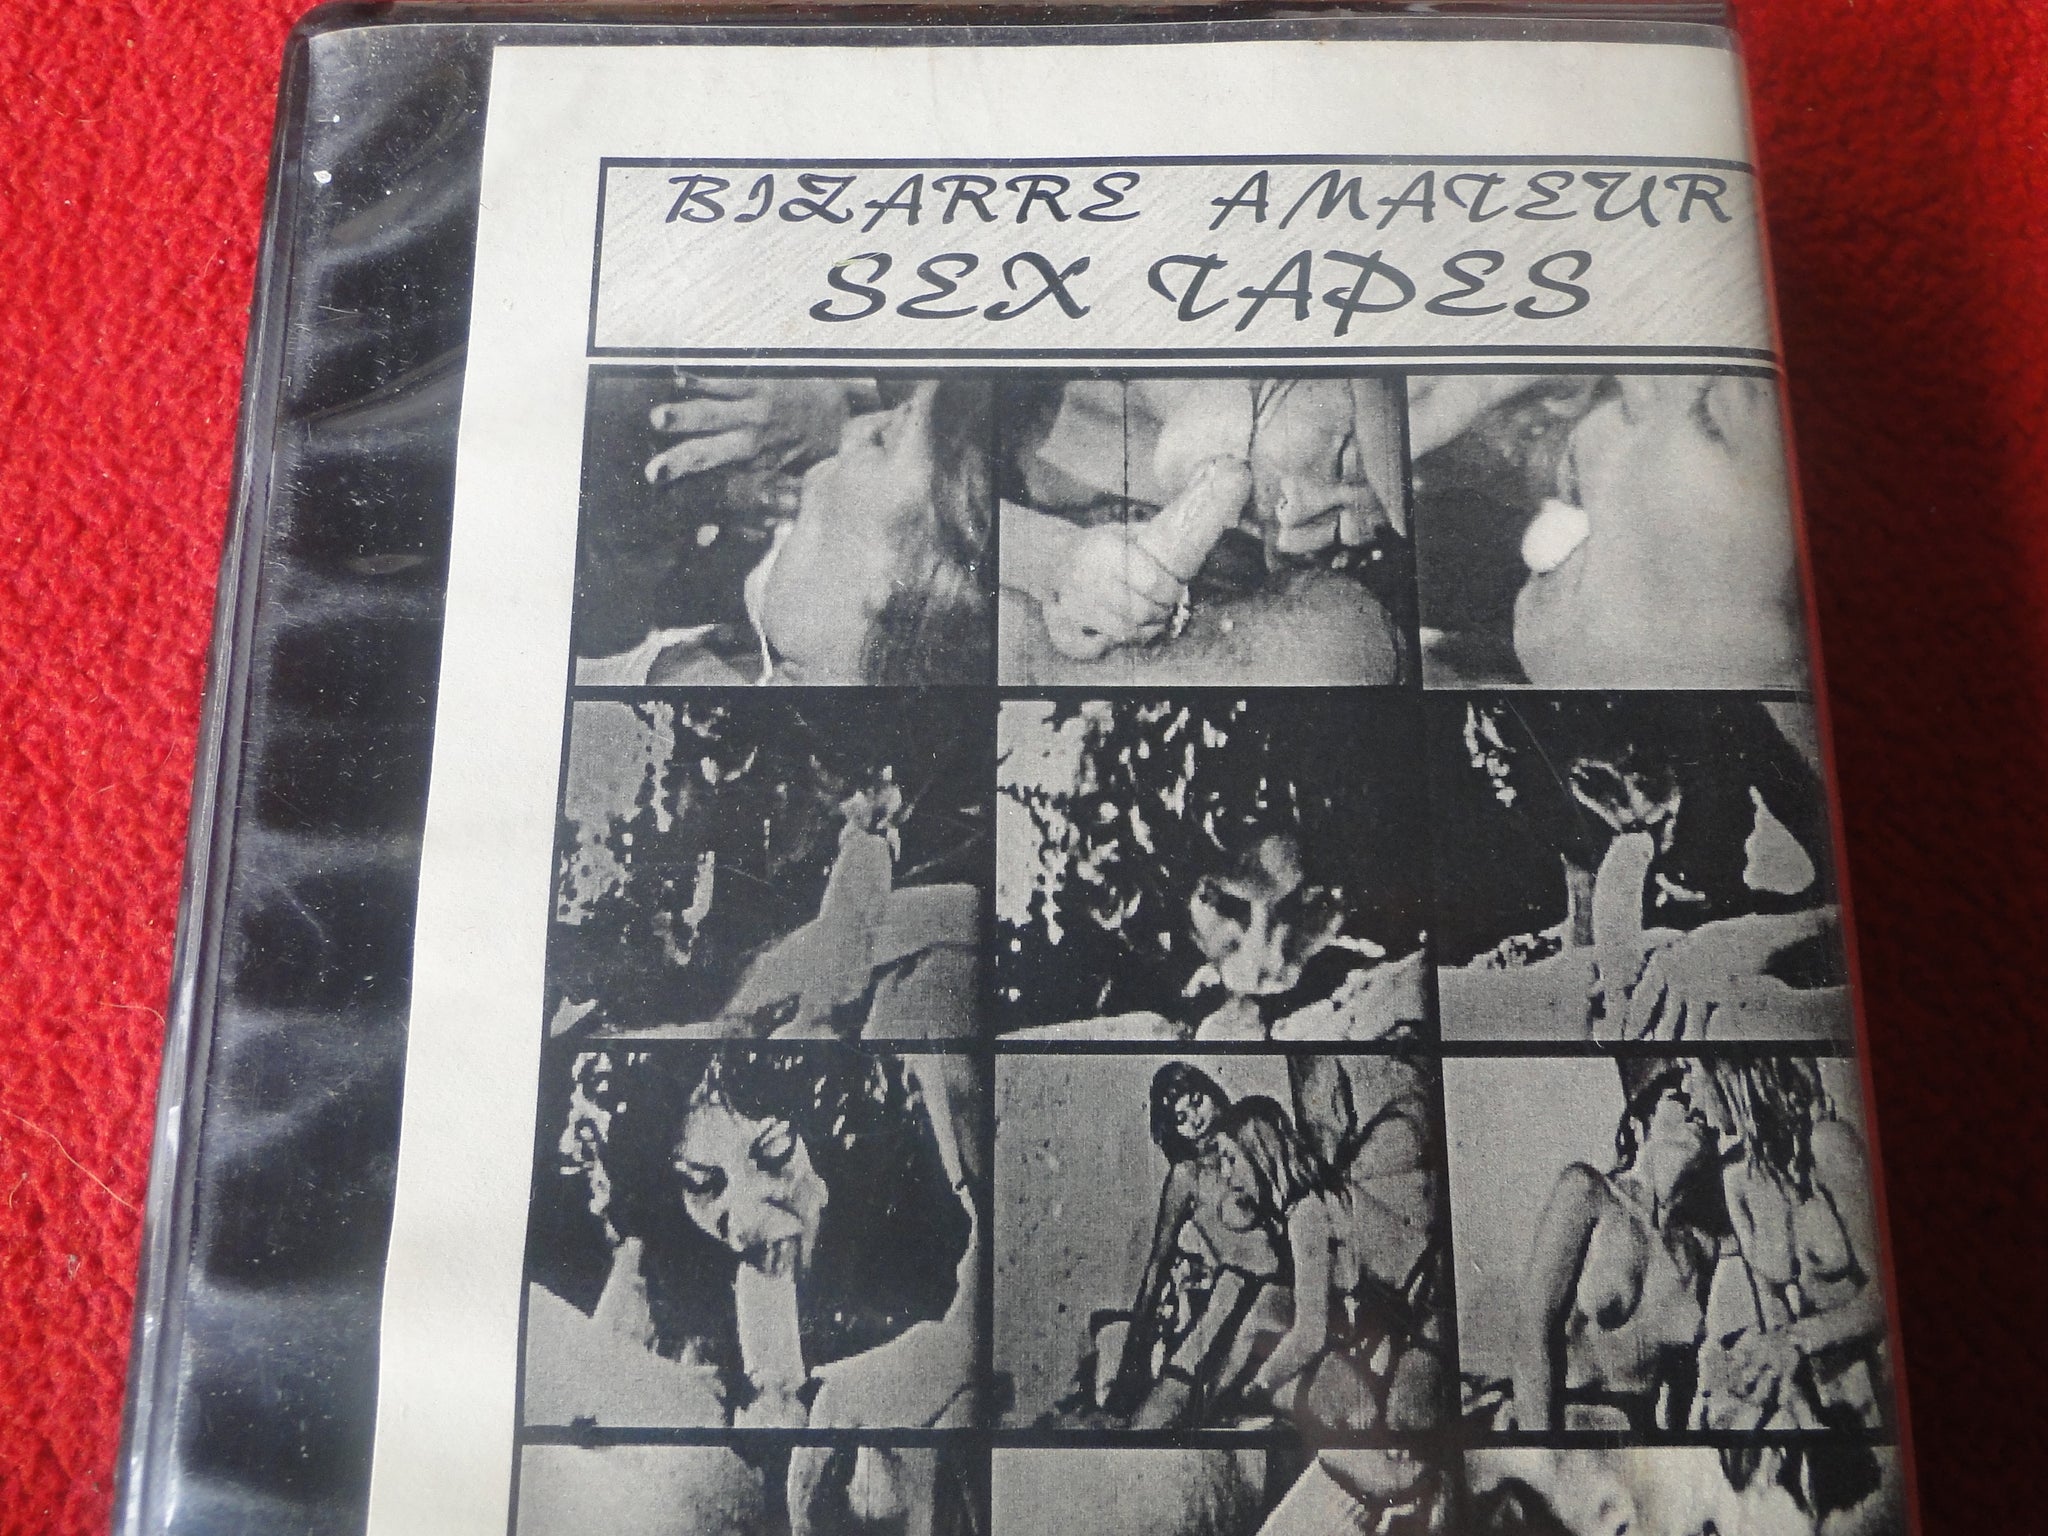 Vintage Adult XXX VHS Porn Tape Bizarre Amateur Sex Tapes Classic Stag Porn Pic Hd